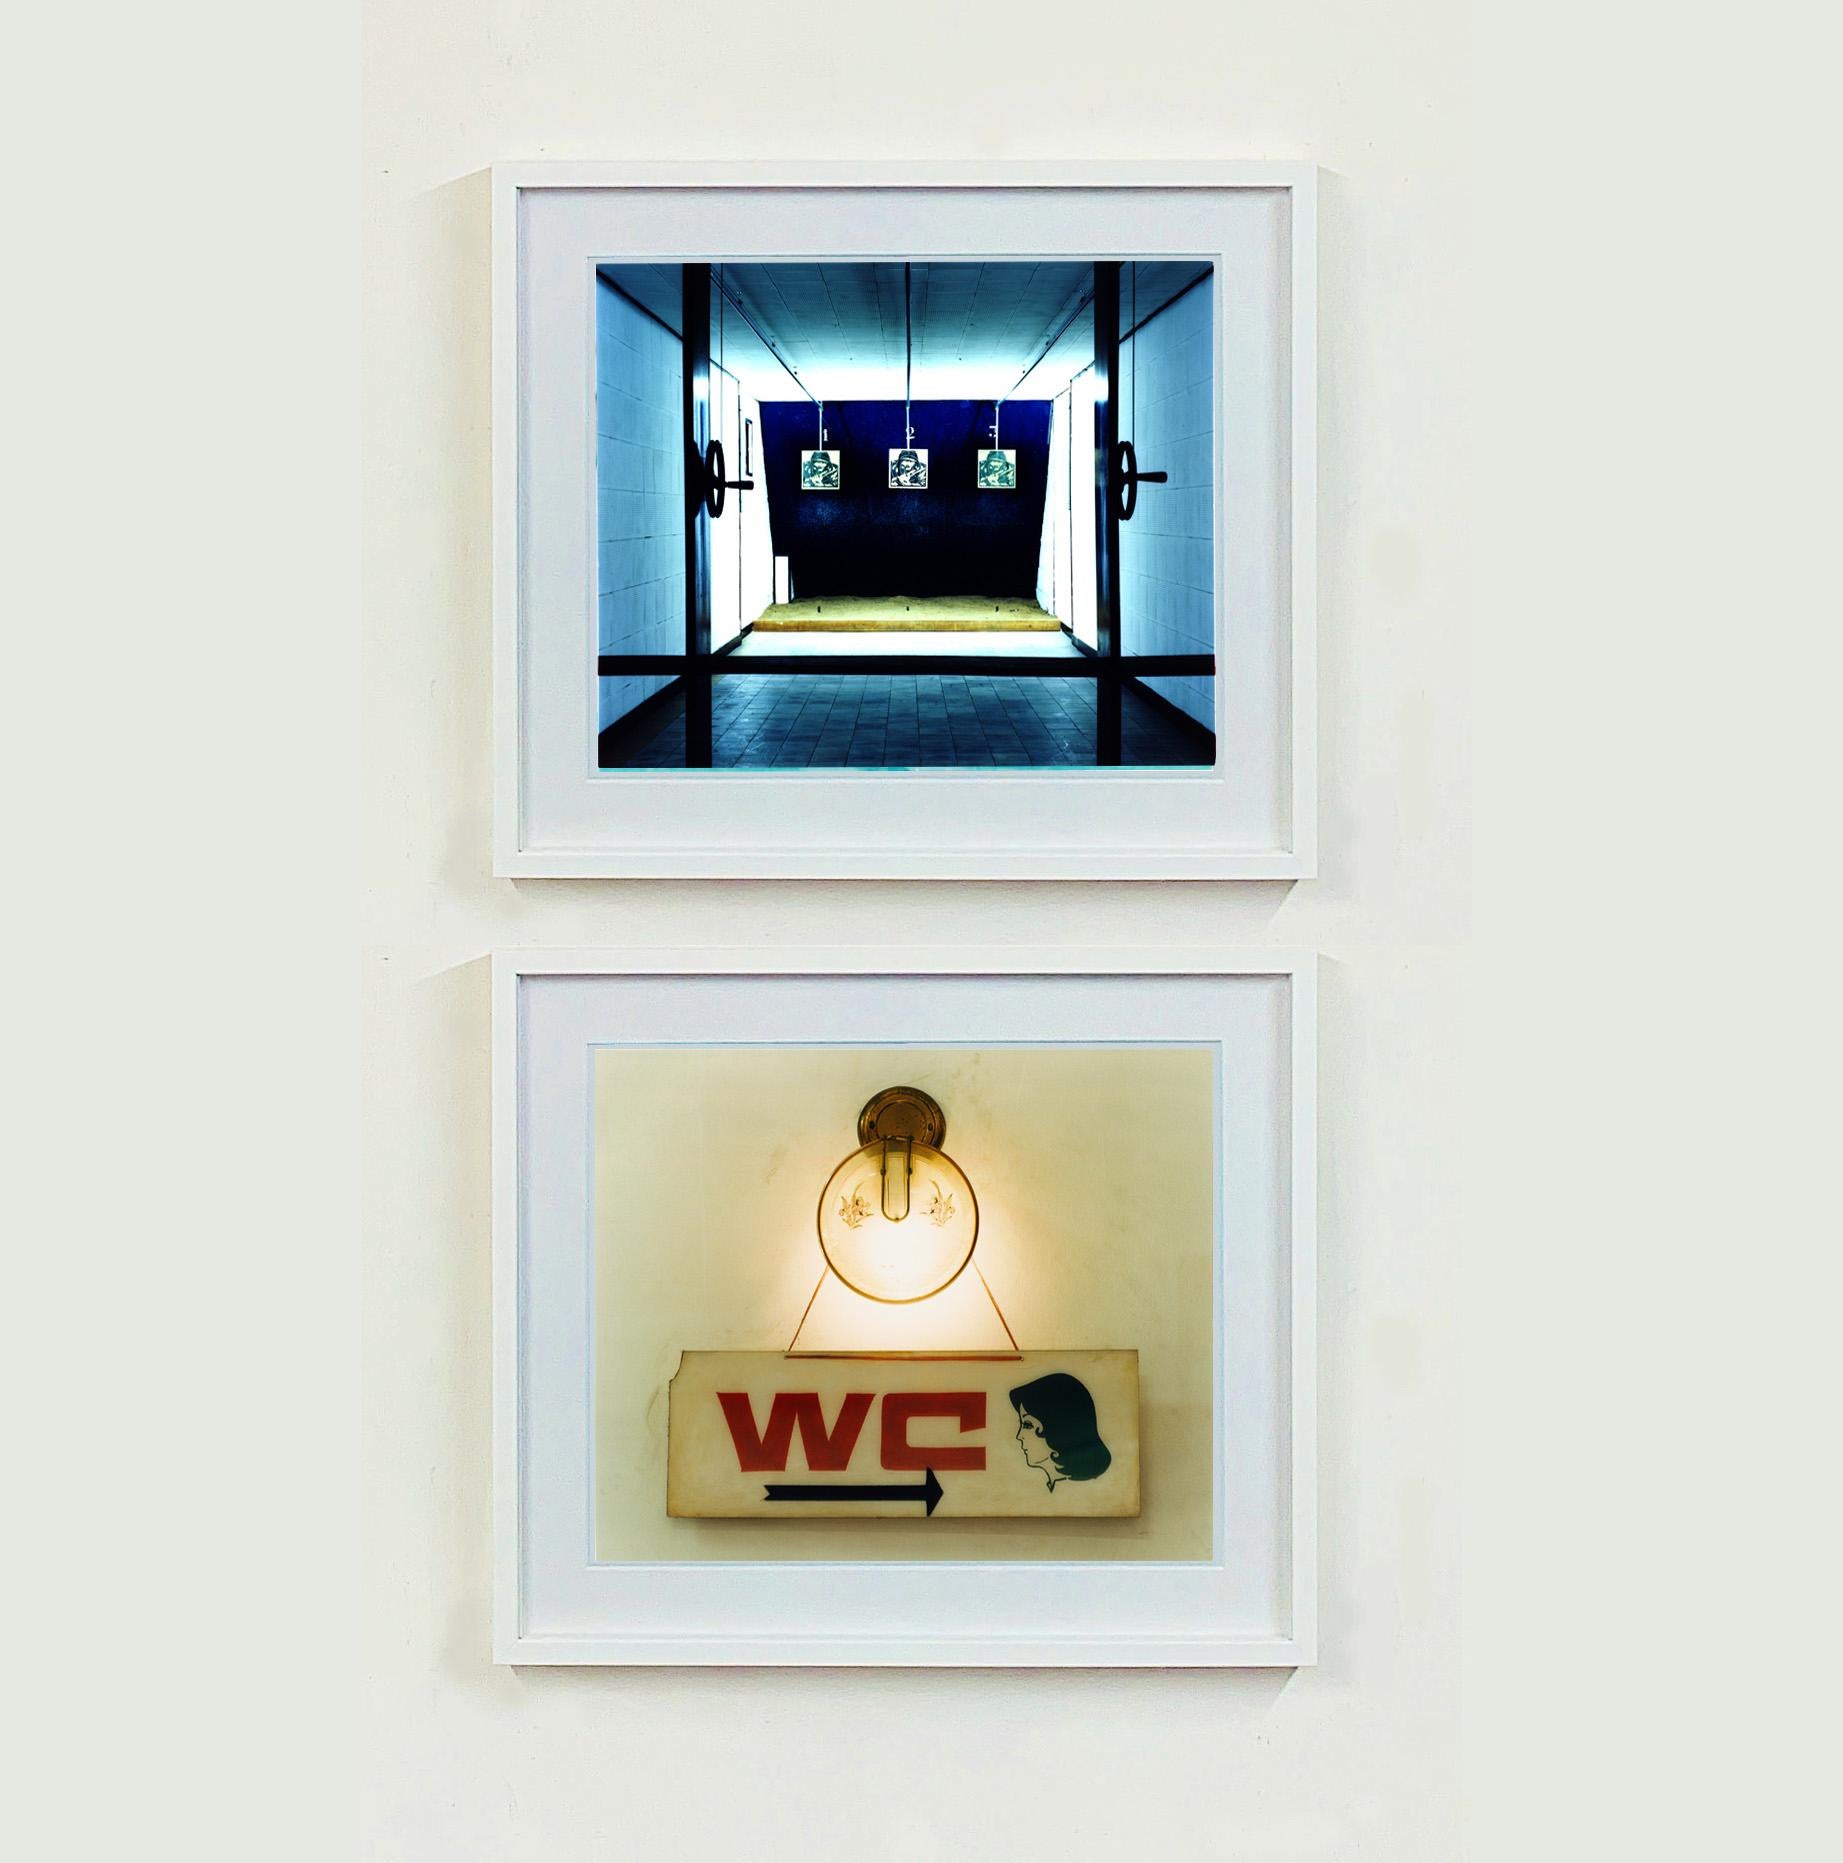 WC, ein kitschiges Retro-Vintage-Schild, aufgenommen in Ho-Chi-Minh-Stadt, Vietnam.

Dieses Kunstwerk ist eine limitierte Auflage von 25 glänzenden Fotodrucken, trocken auf Aluminium aufgezogen, in einem weißen Fensterrahmen aus Museumskarton und